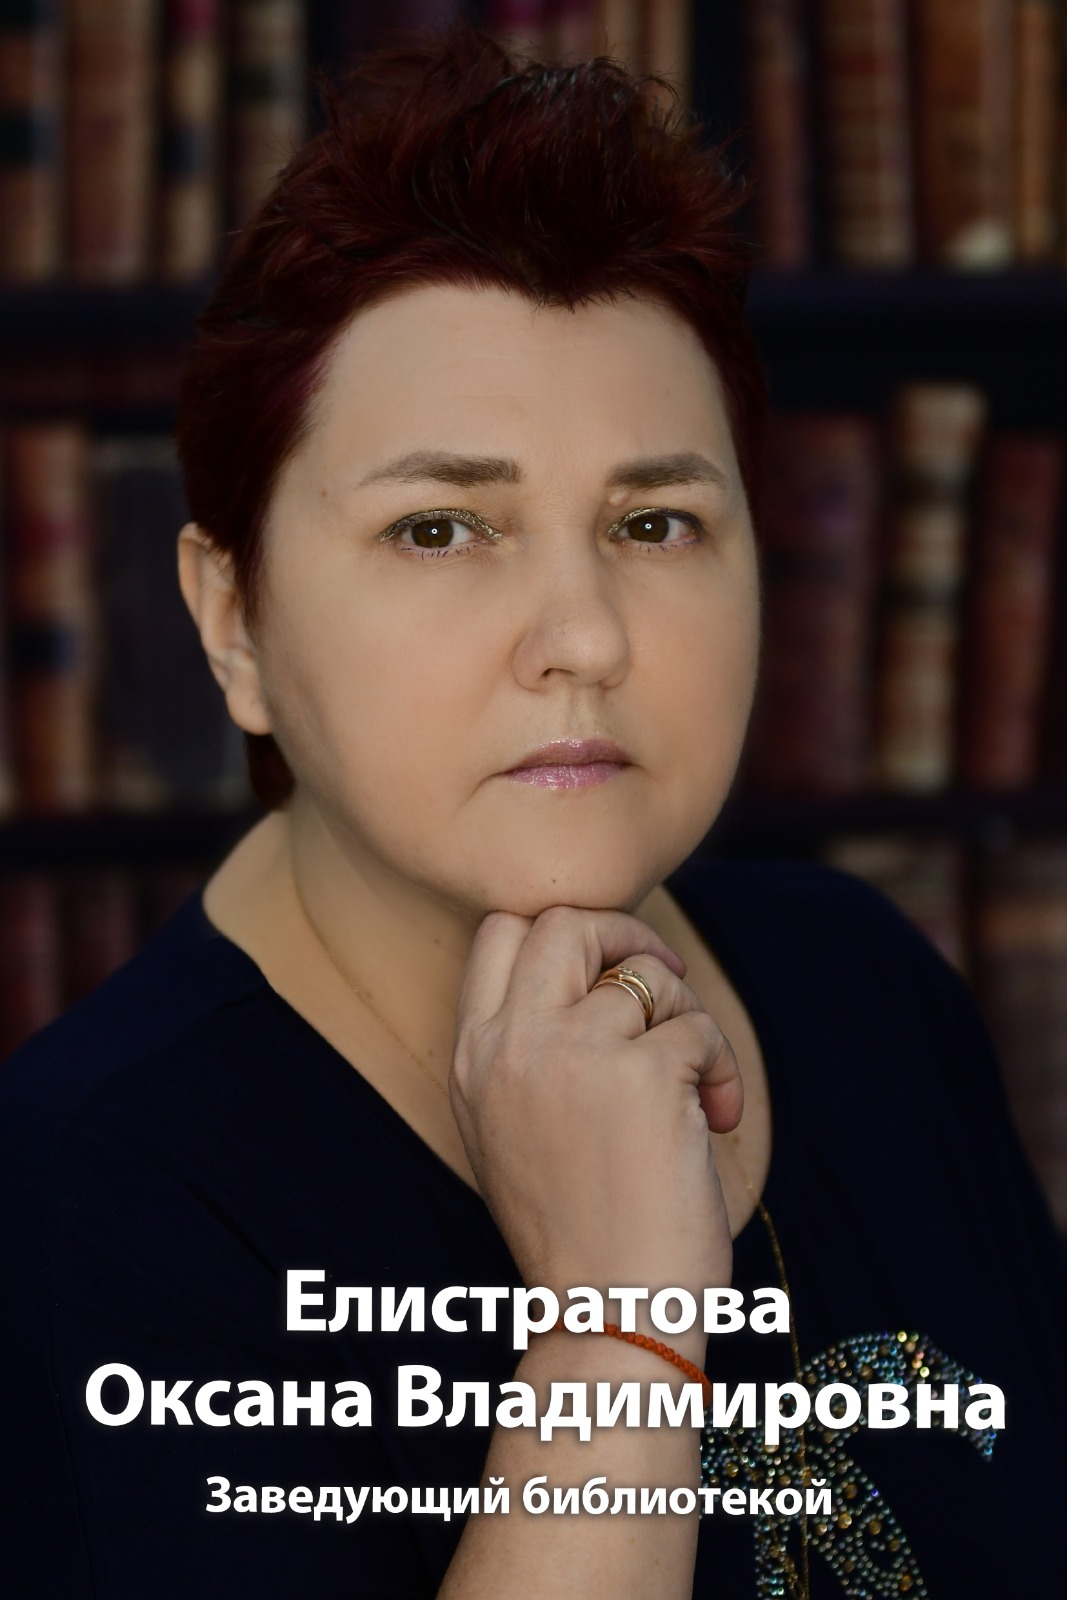 Елистратова Оксана Владимировна.